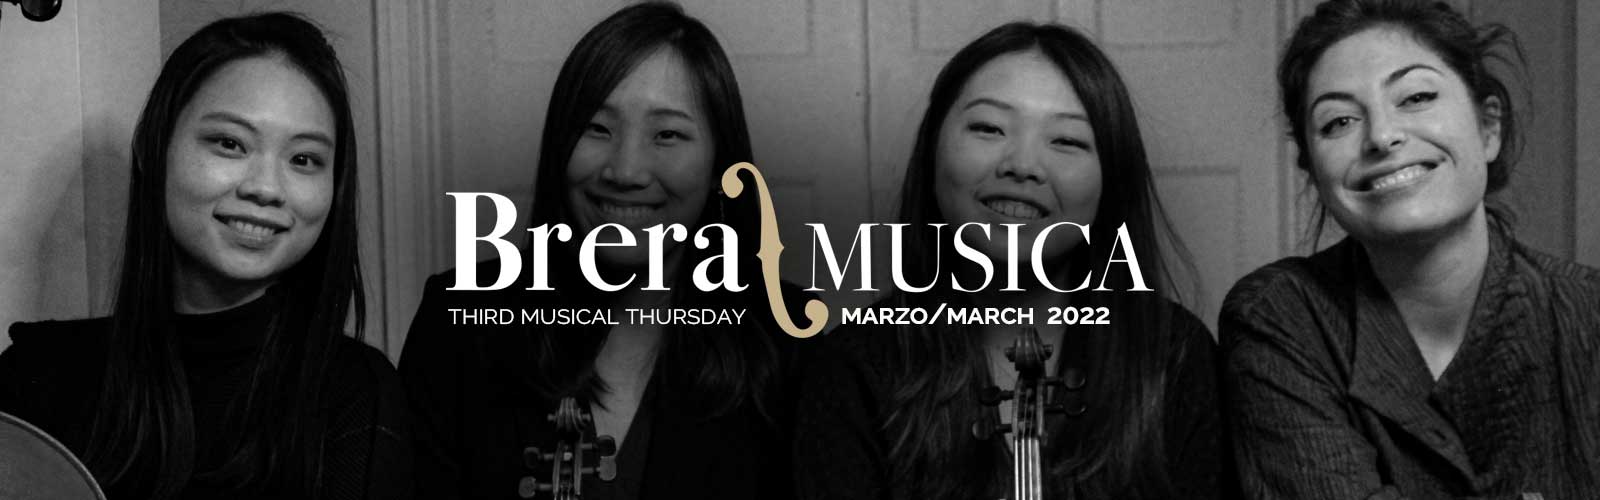 Brera/Musica<br>Terzo giovedì musicale